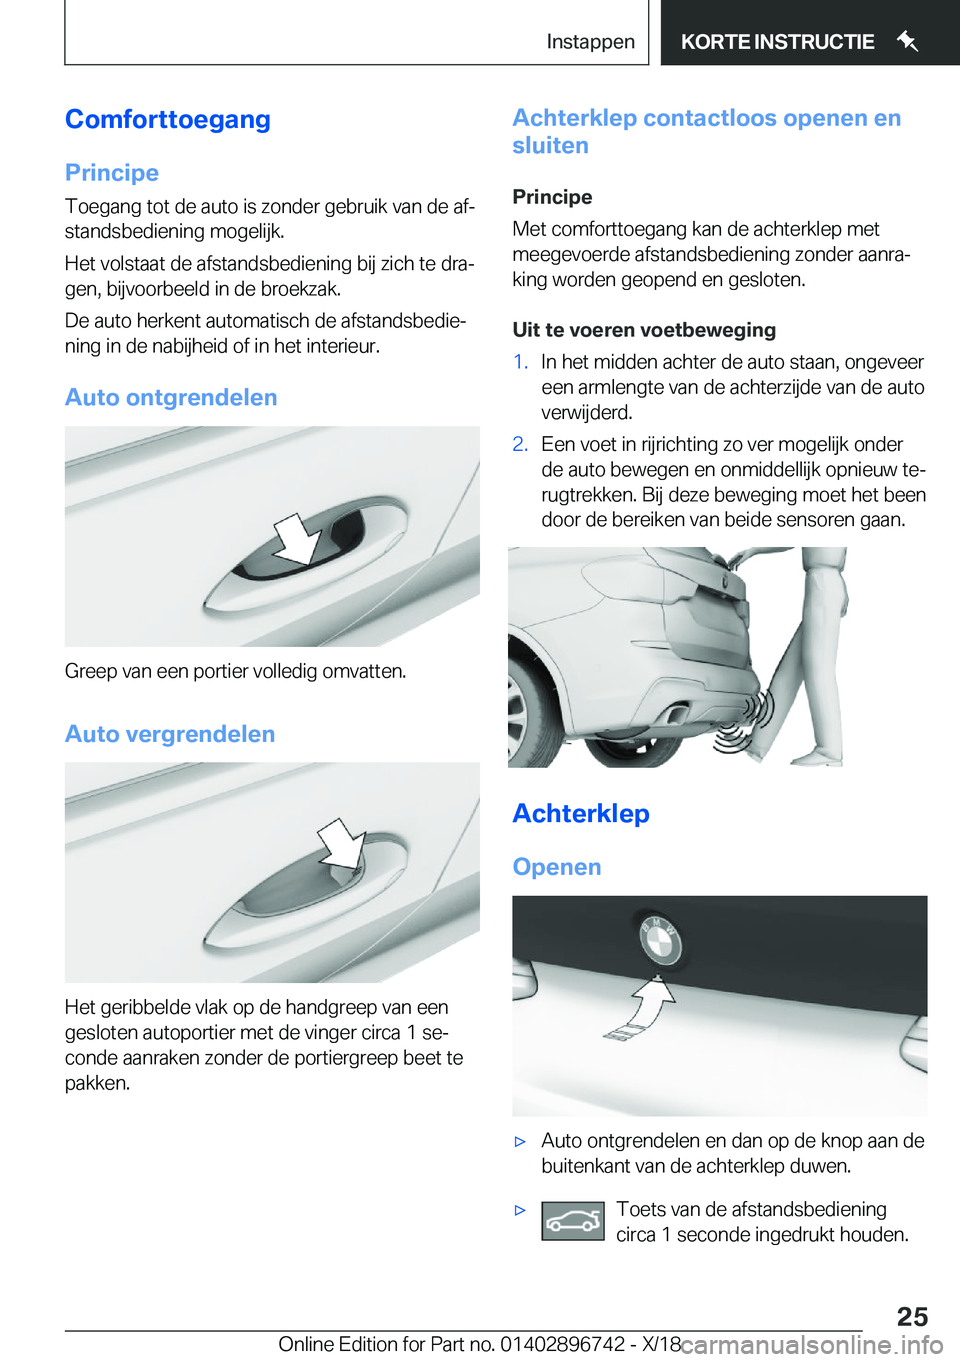 BMW X5 2019  Instructieboekjes (in Dutch) �C�o�m�f�o�r�t�t�o�e�g�a�n�g
�P�r�i�n�c�i�p�e �T�o�e�g�a�n�g��t�o�t��d�e��a�u�t�o��i�s��z�o�n�d�e�r��g�e�b�r�u�i�k��v�a�n��d�e��a�fj
�s�t�a�n�d�s�b�e�d�i�e�n�i�n�g��m�o�g�e�l�i�j�k�.
�H�e�t